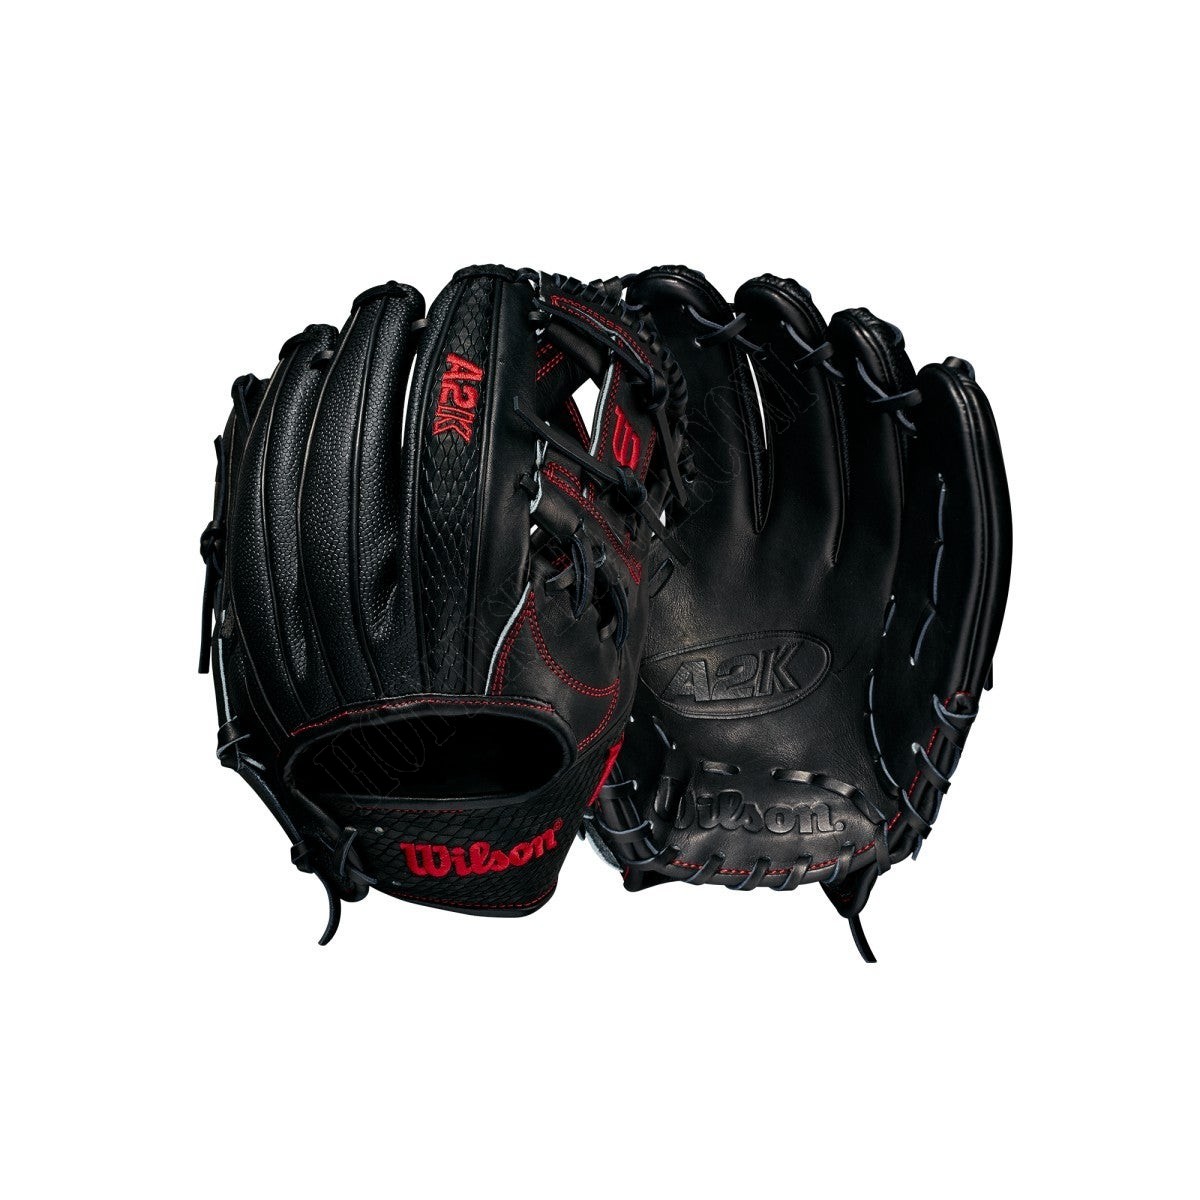 2021 A2K 1787SS 11.75" Infield Baseball Glove ● Wilson Promotions - 2021 A2K 1787SS 11.75" Infield Baseball Glove ● Wilson Promotions